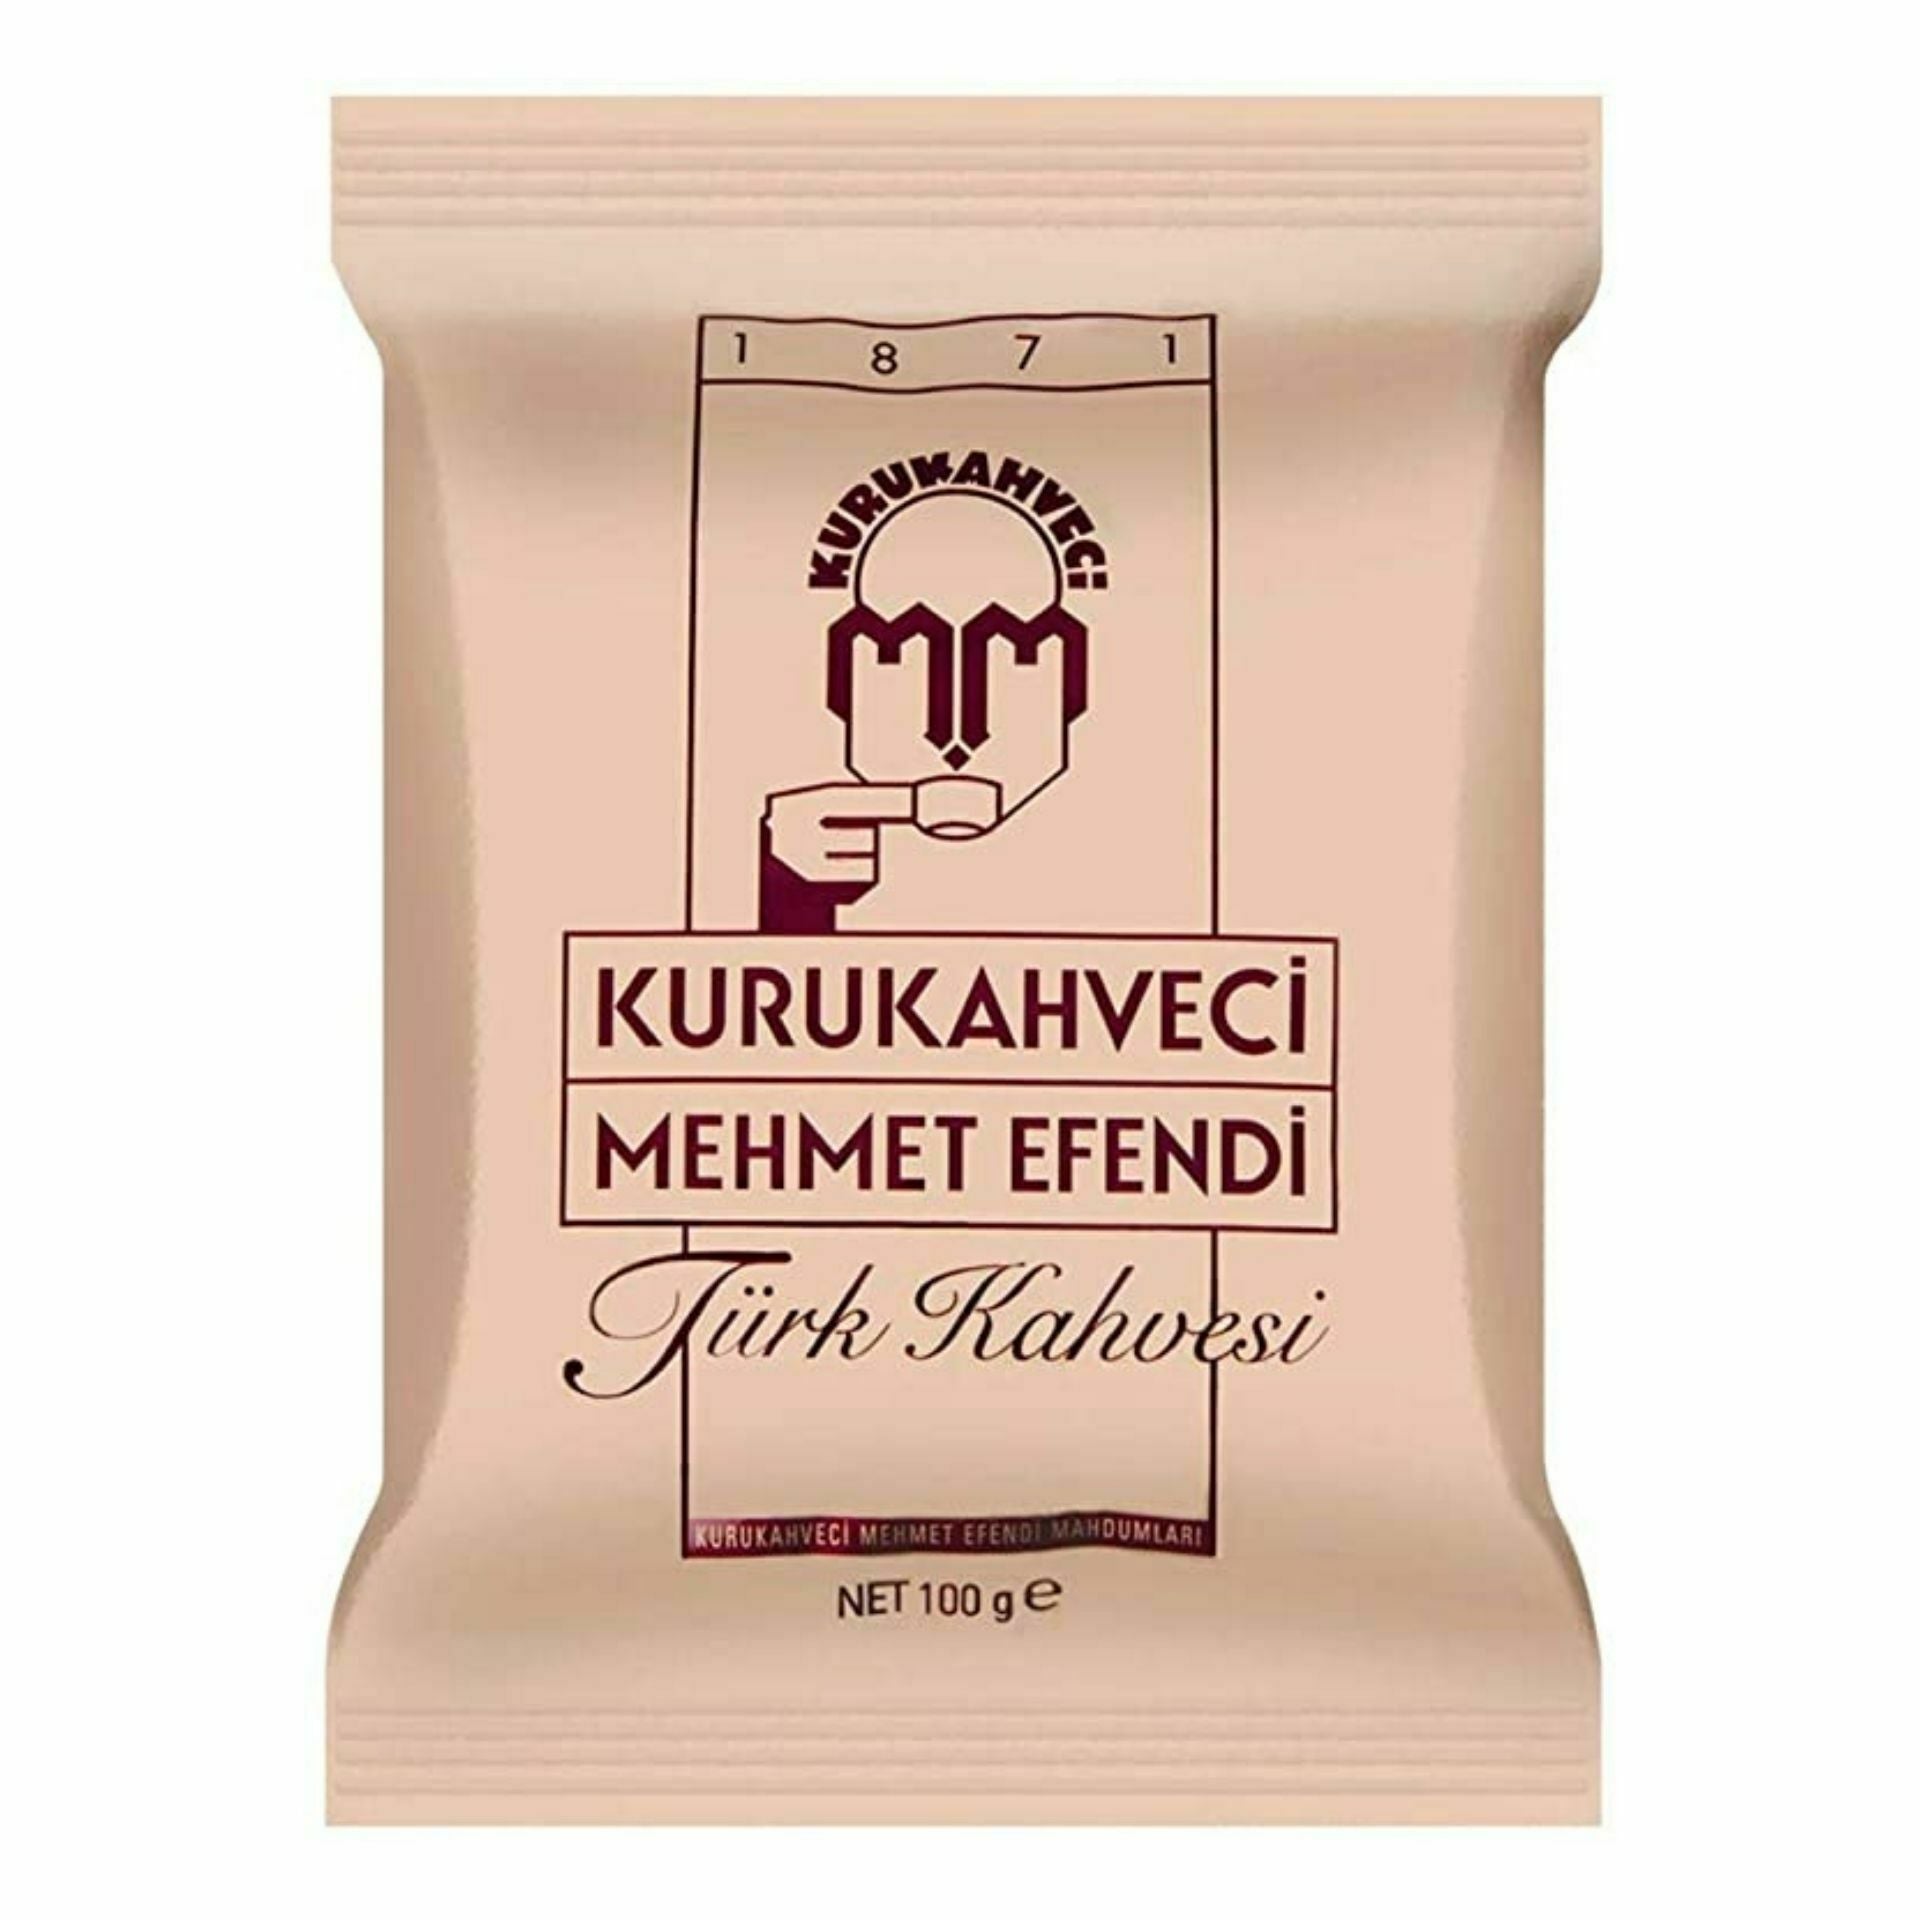 Kurukahveci Mehmet Efendi Turkish Coffee (100G) - Aytac Foods